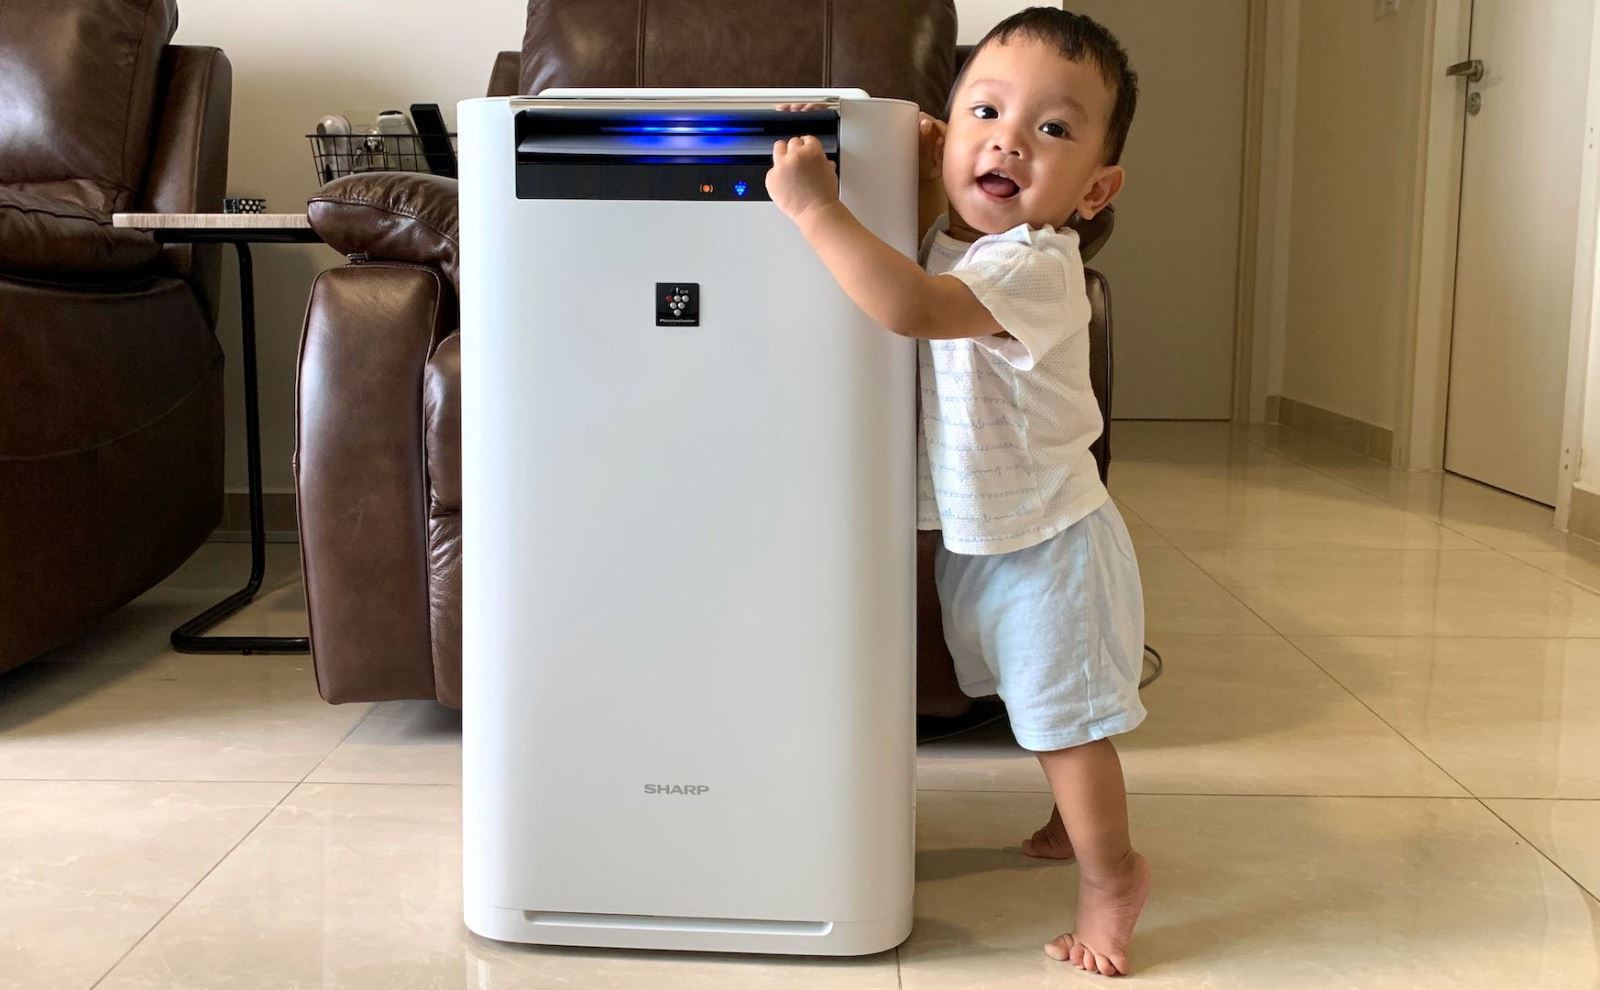 Liệu có nên mua máy lọc không khí bù ẩm cho gia đình hay không?